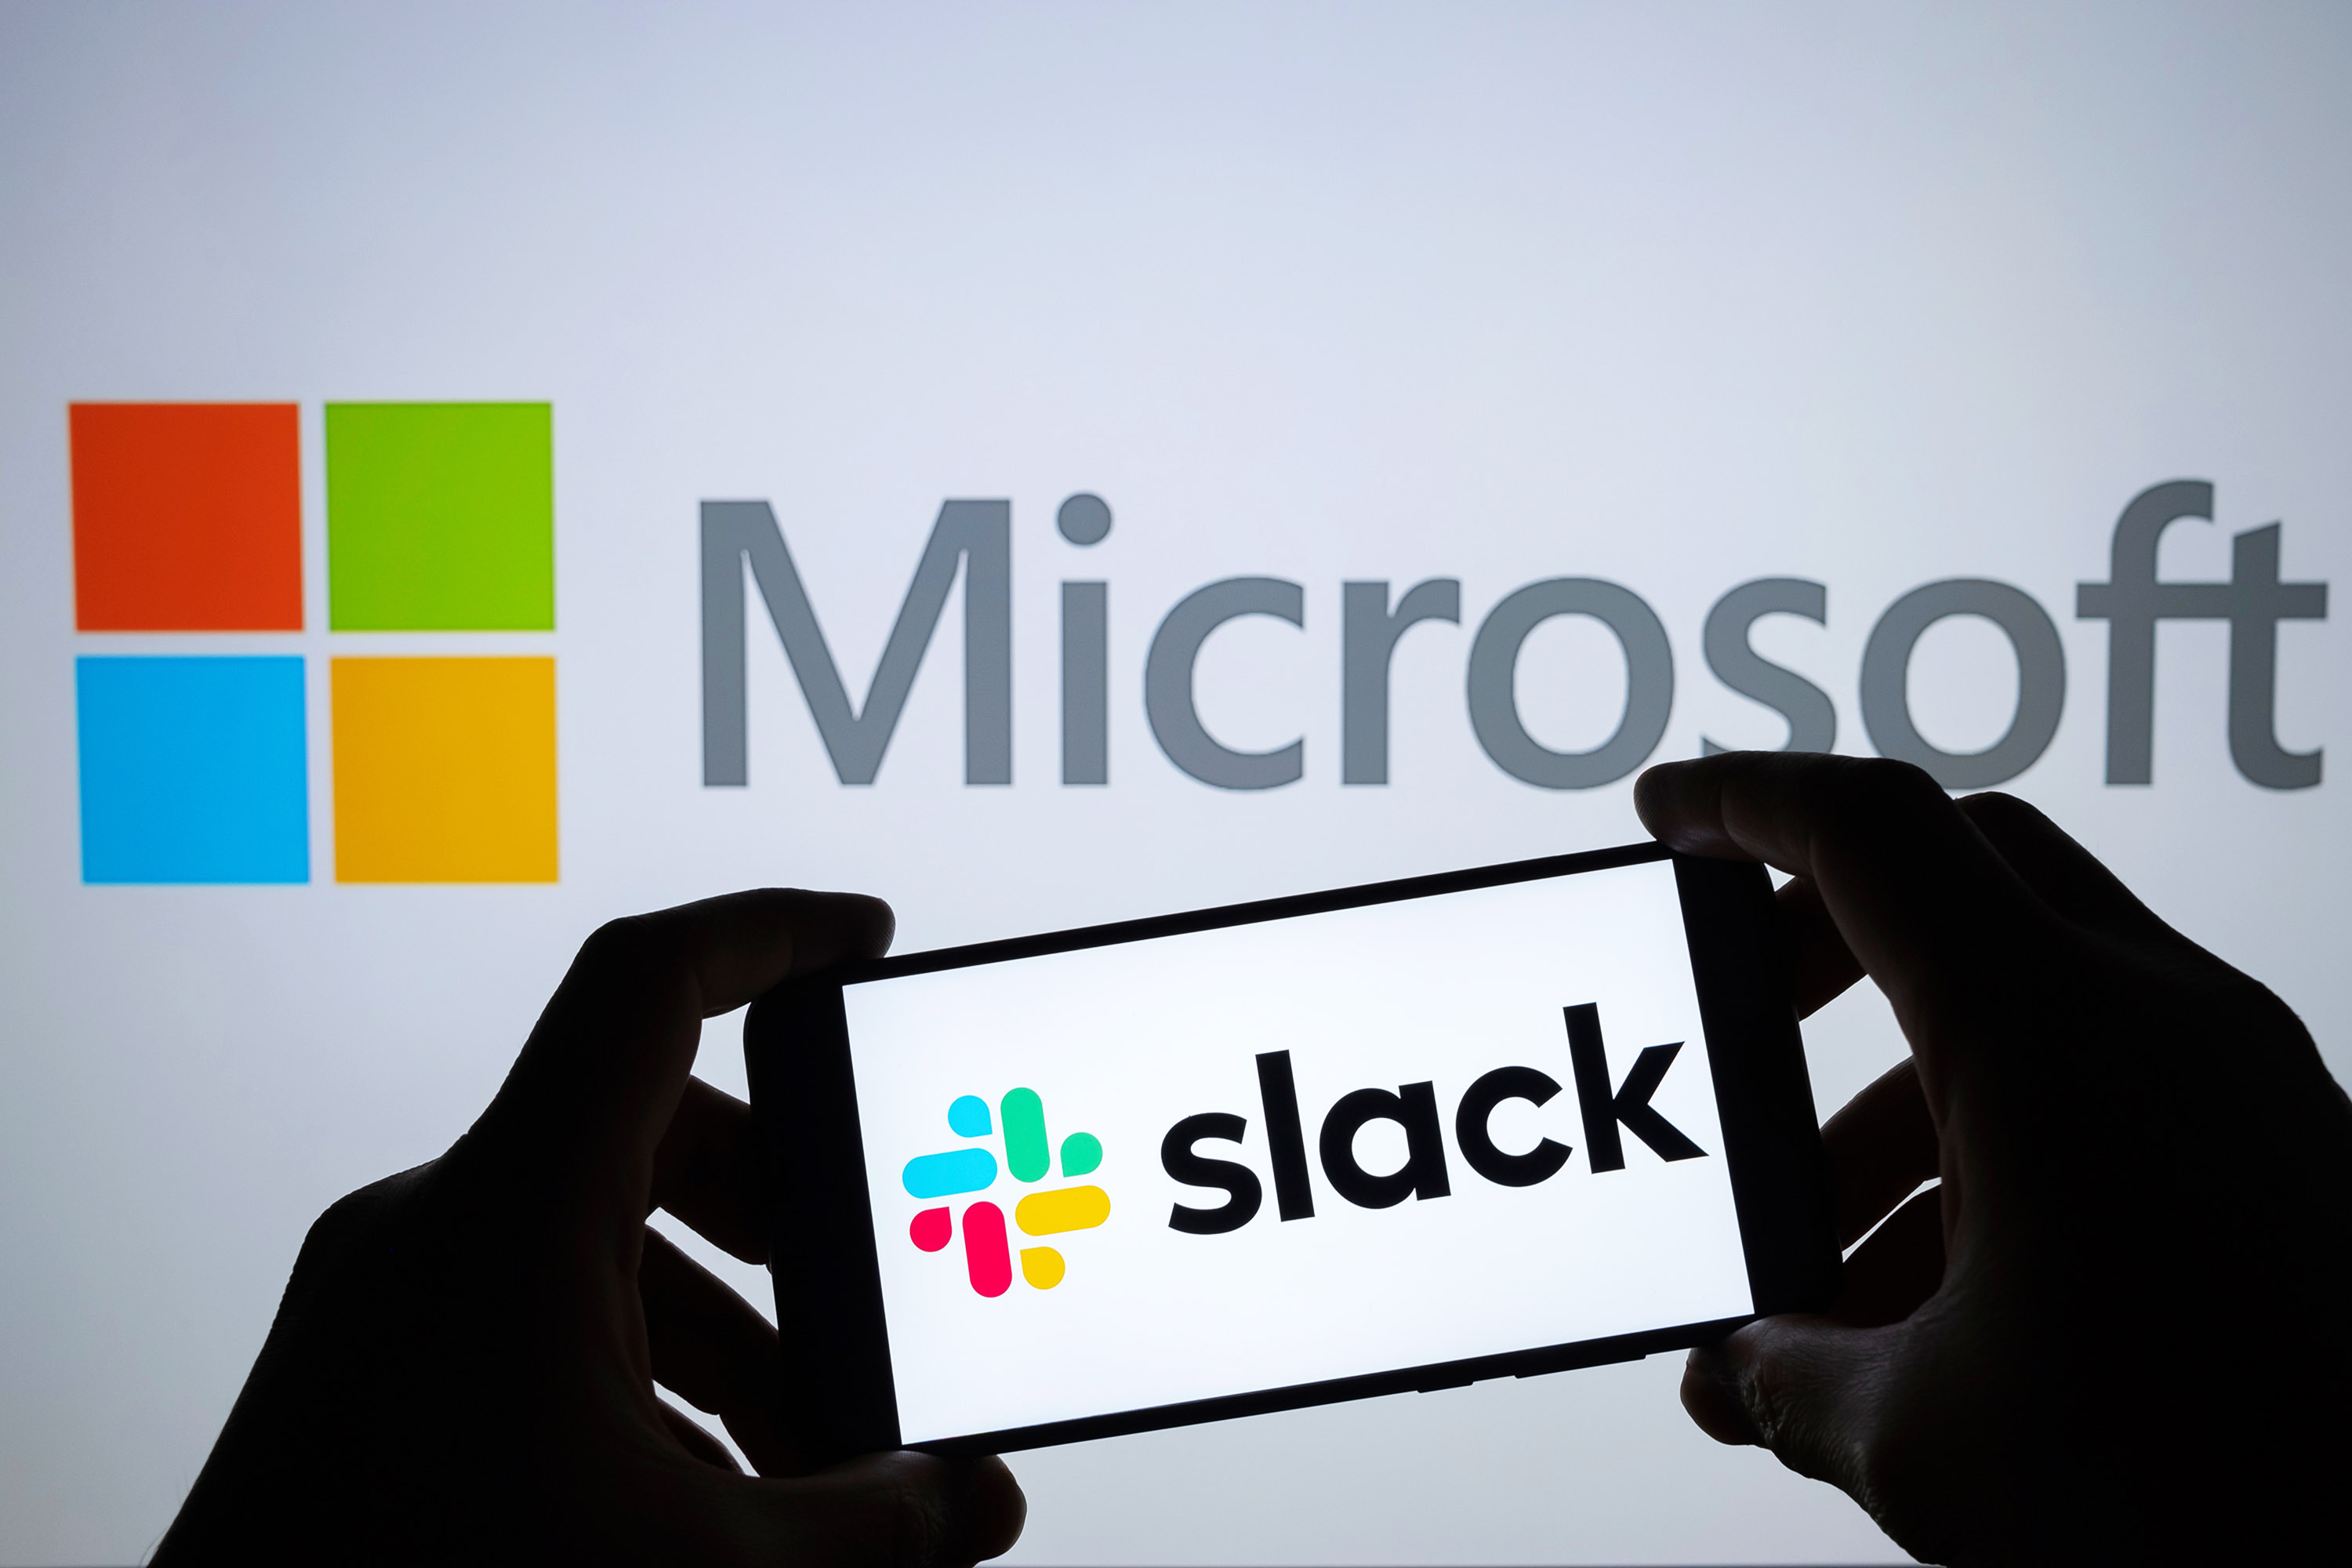 Slack pour Windows on ARM est disponible en version bêta